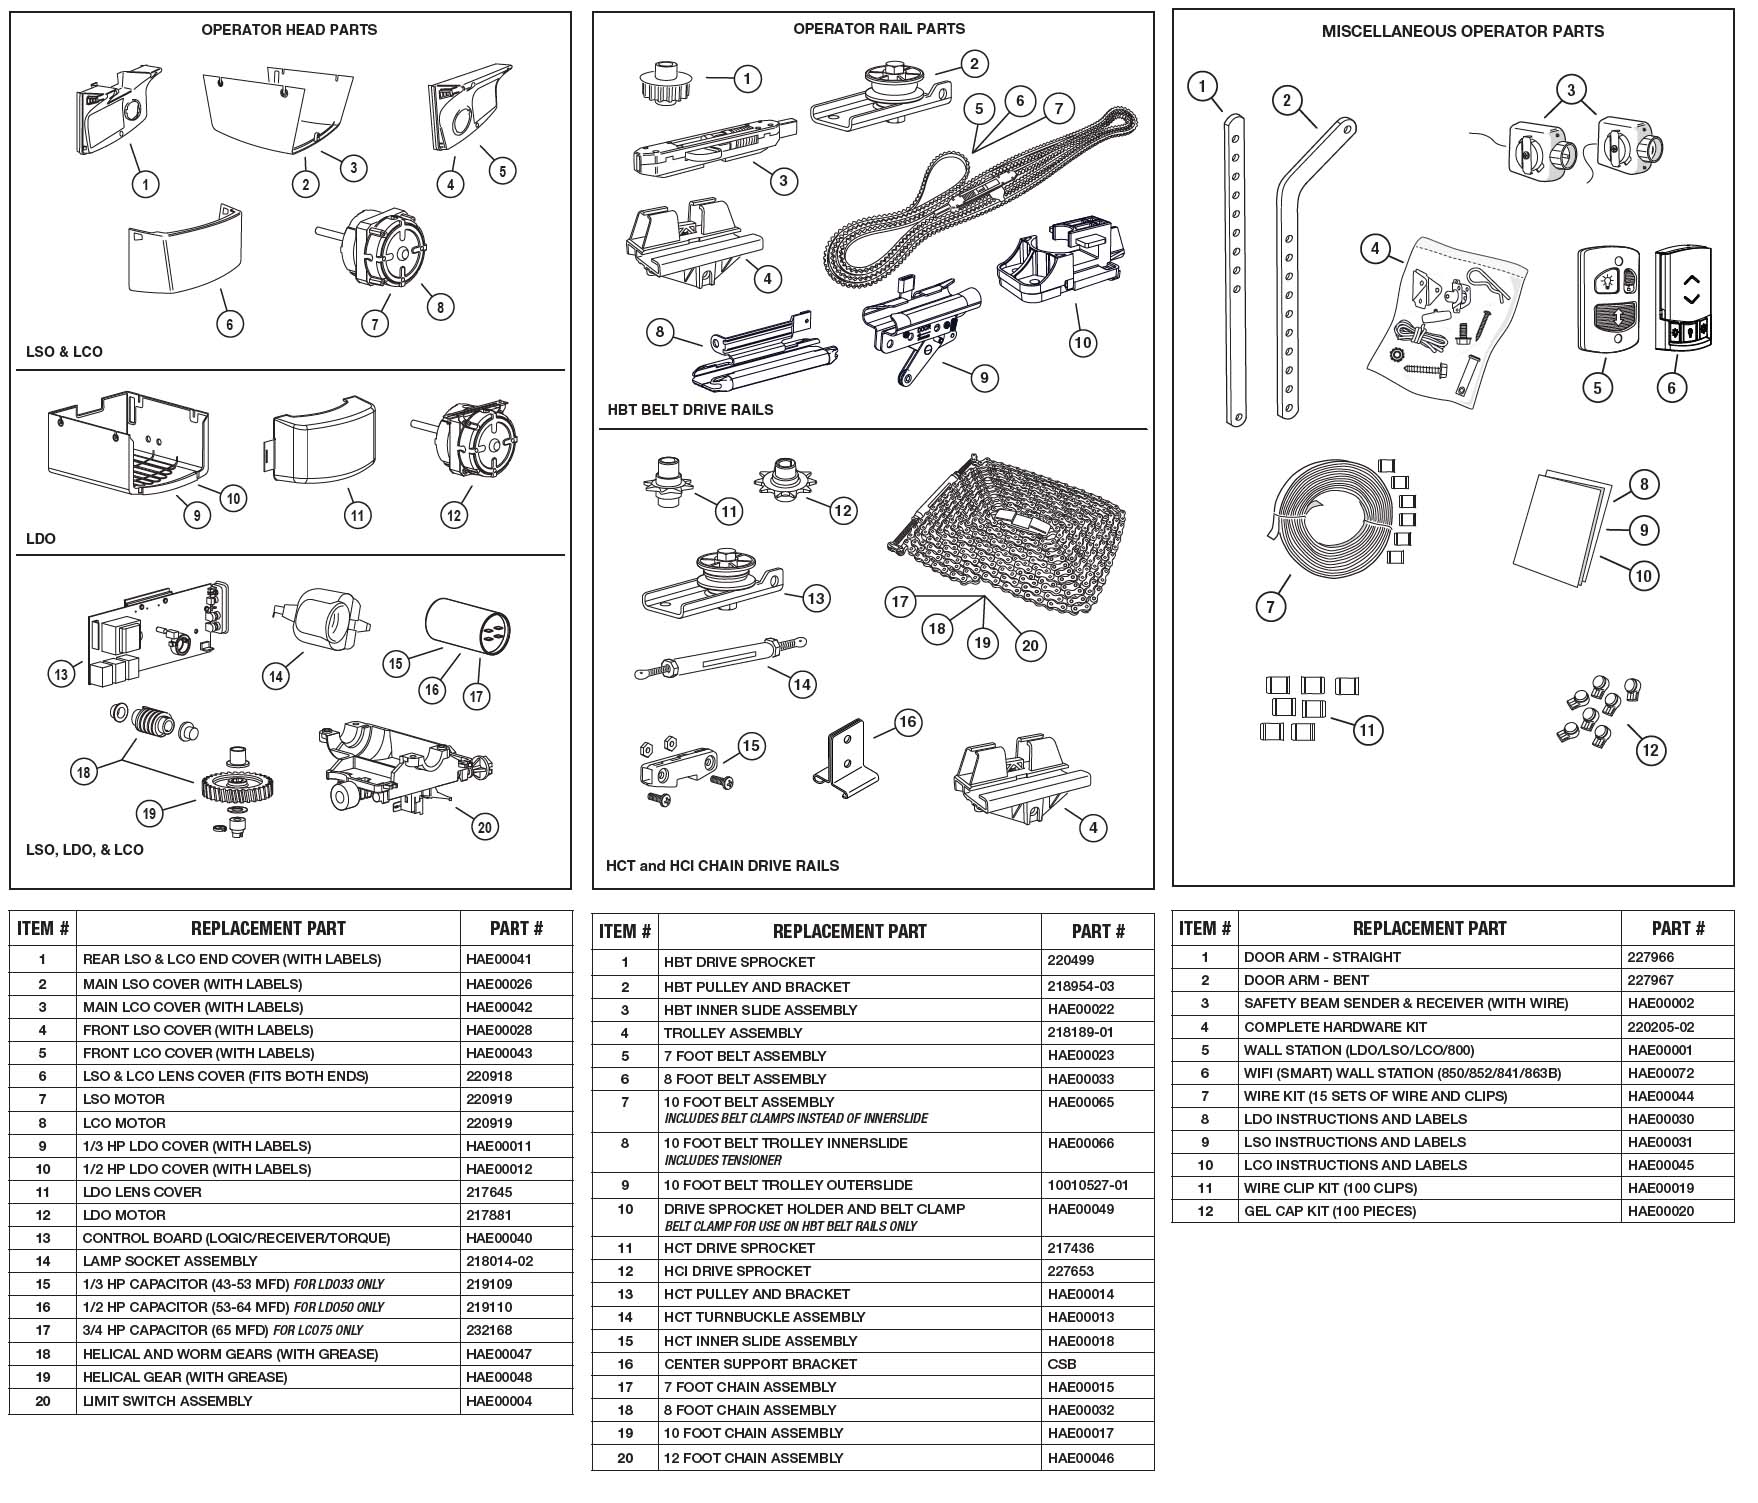 Linear LCO75 Garage Door Opener Parts Diagram and List